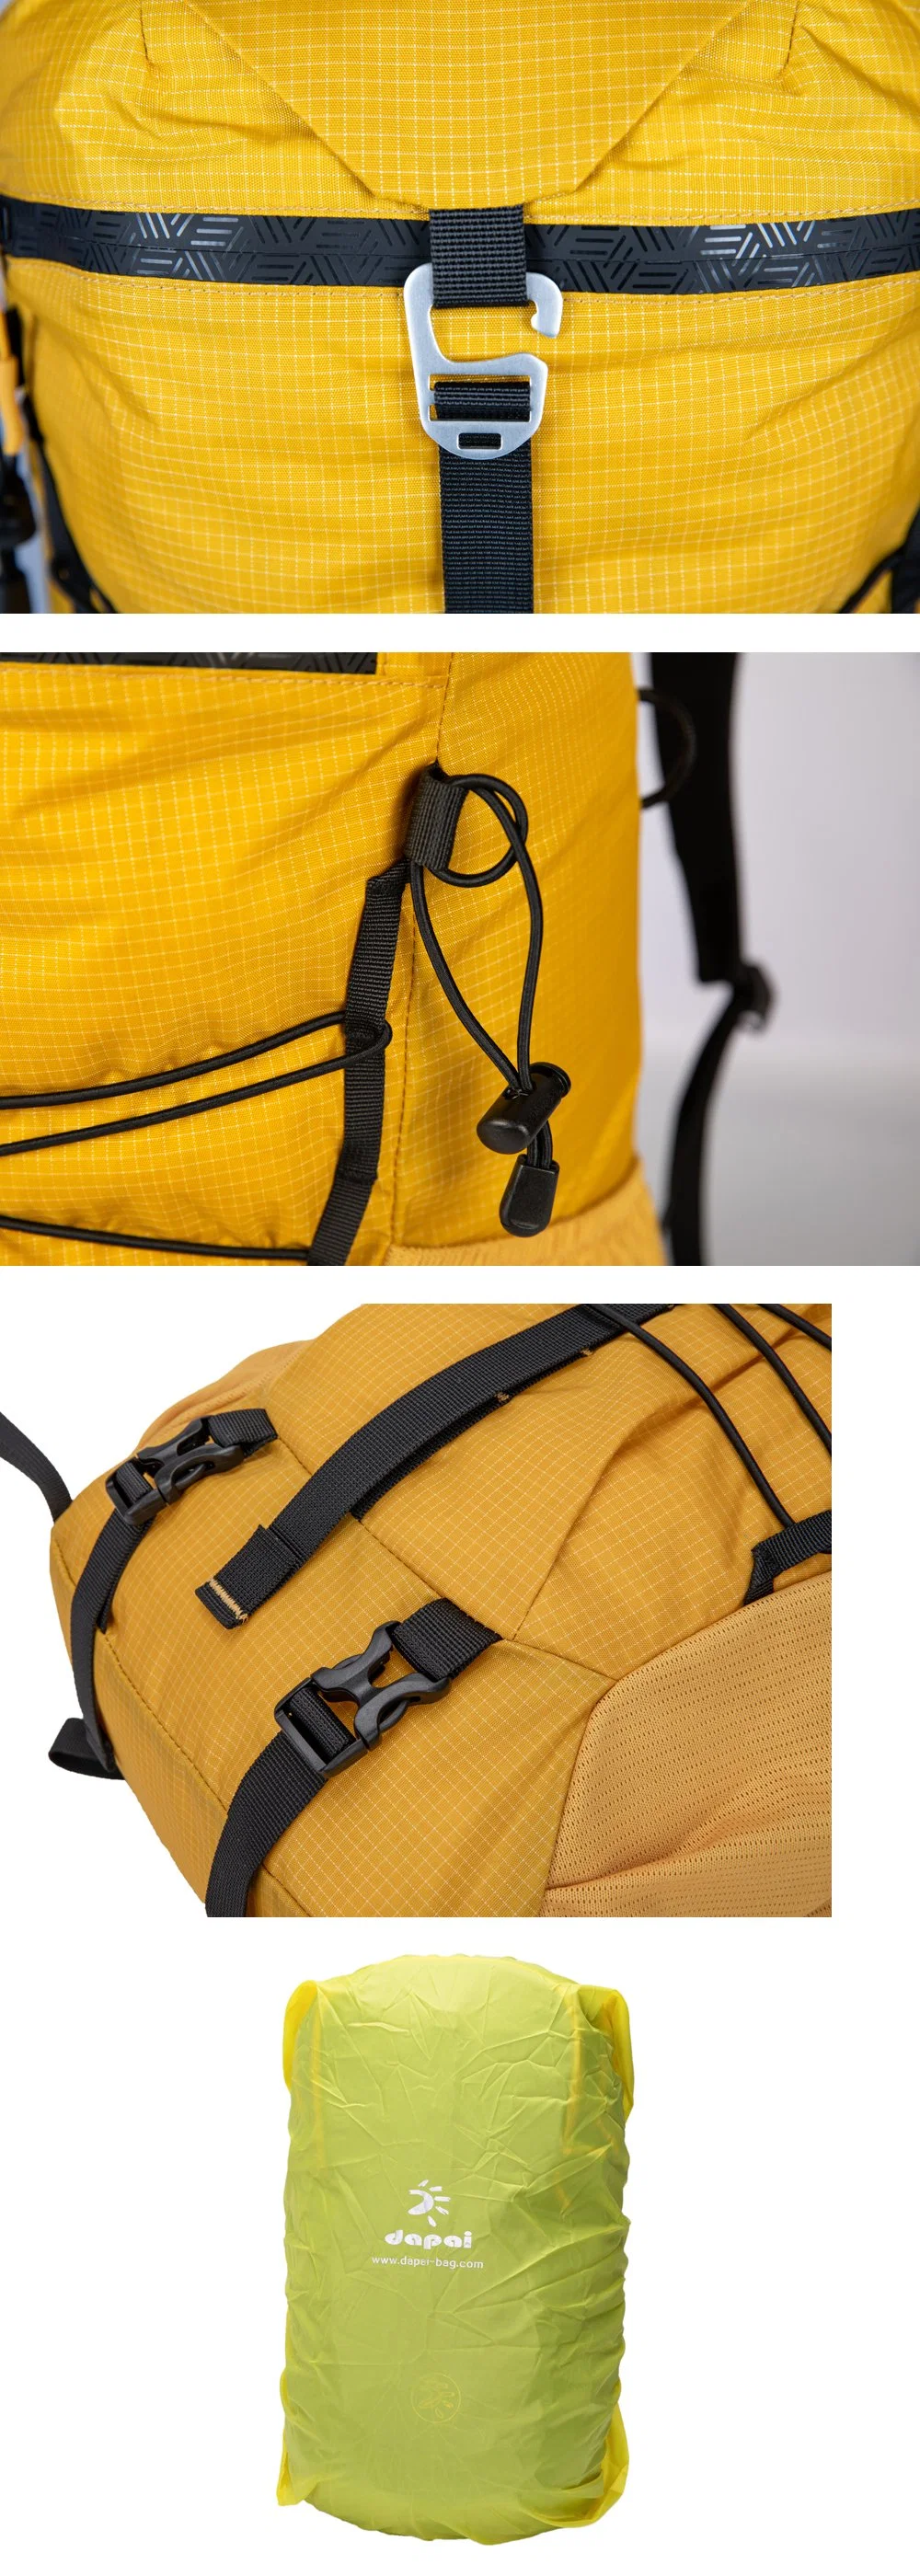 Promotional Outdoor Bag Hiking Camping Backpack Trekking Daypack Waterproof Backpack